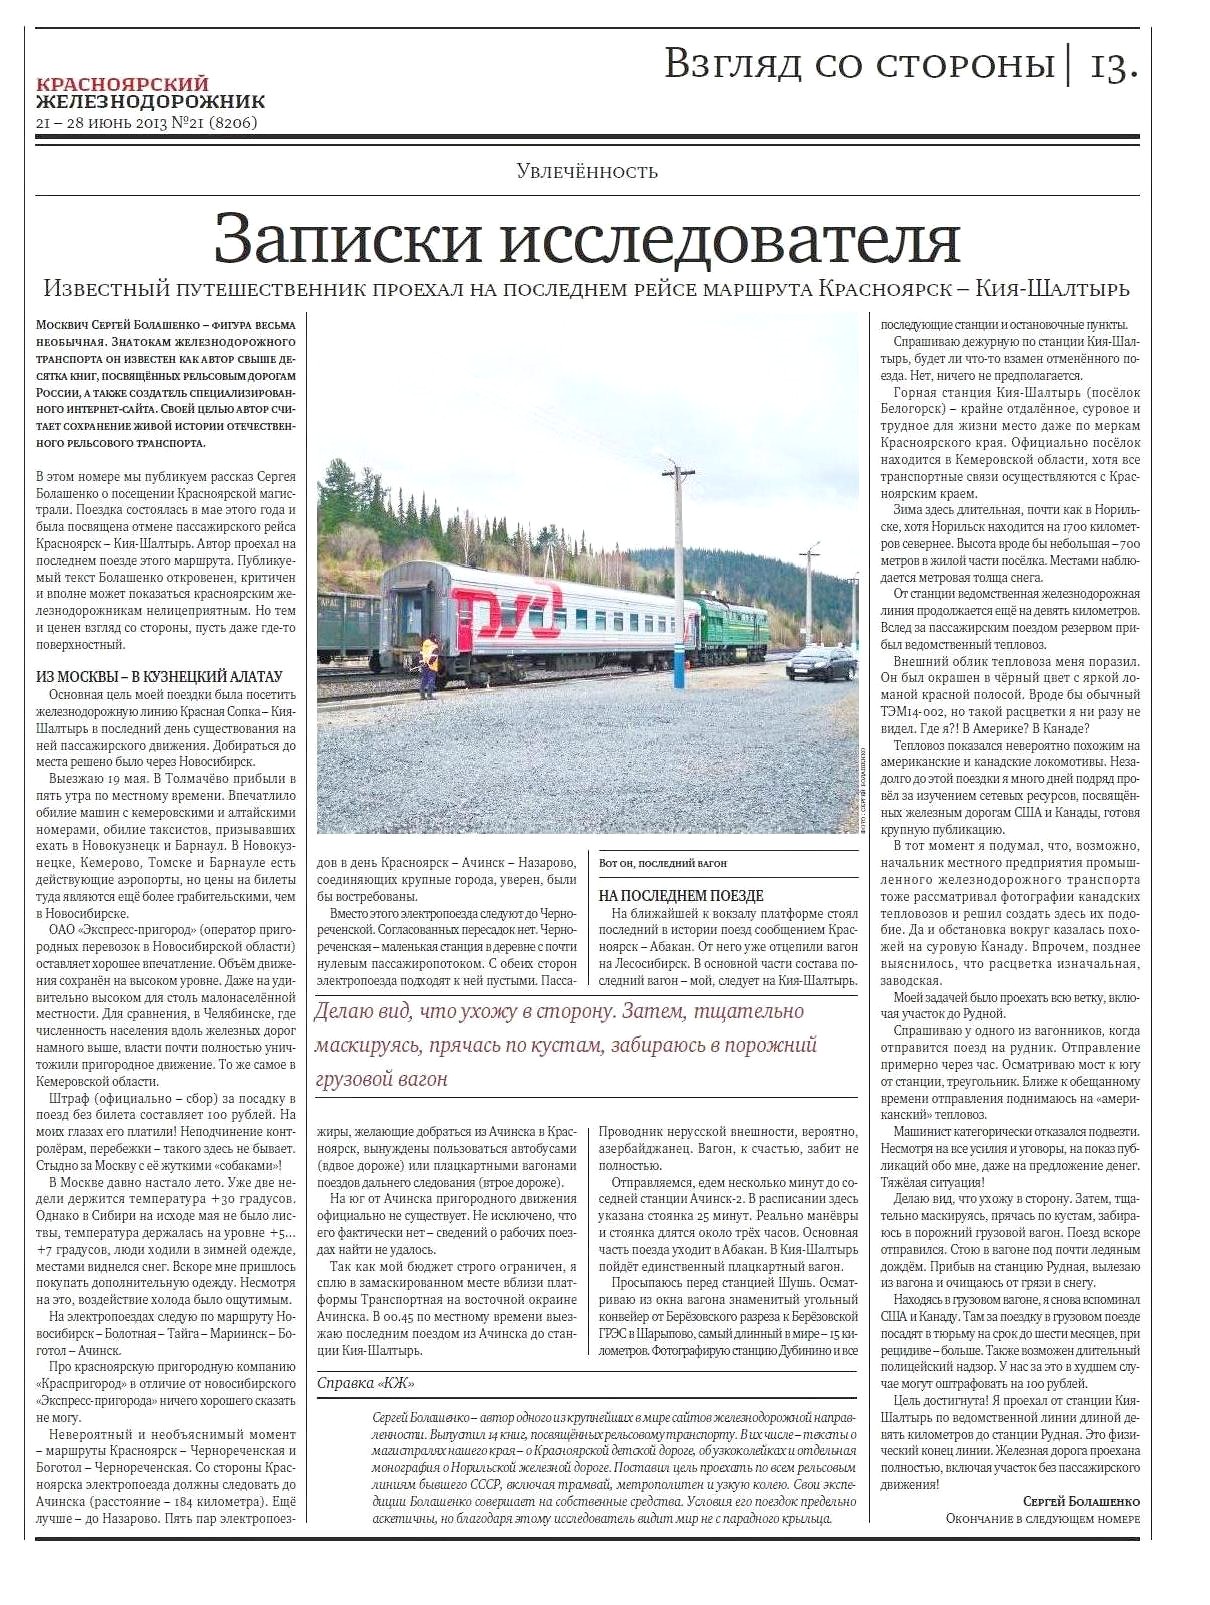 Публикация в газете «Красноярский Железнодорожник»,  2013 год